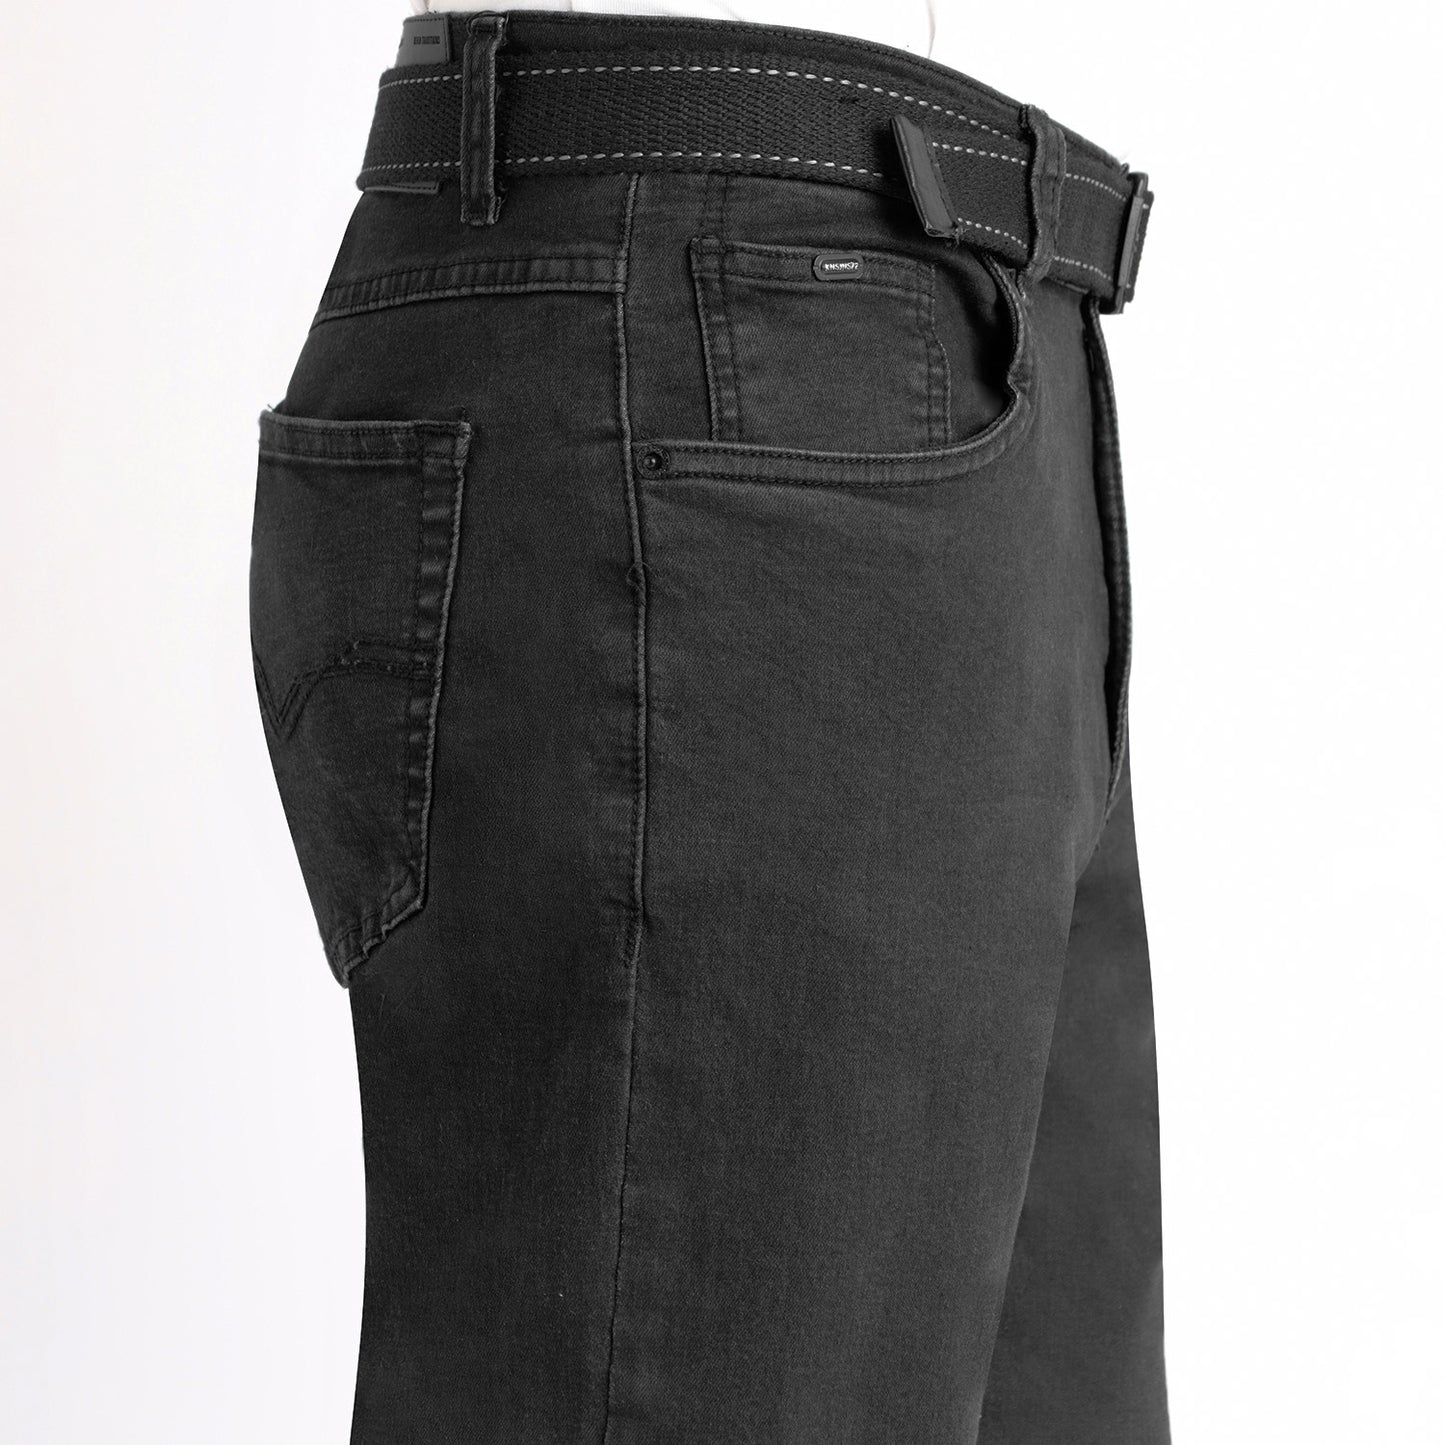 Pantalon Hombre Regular Confort Negro - 230201